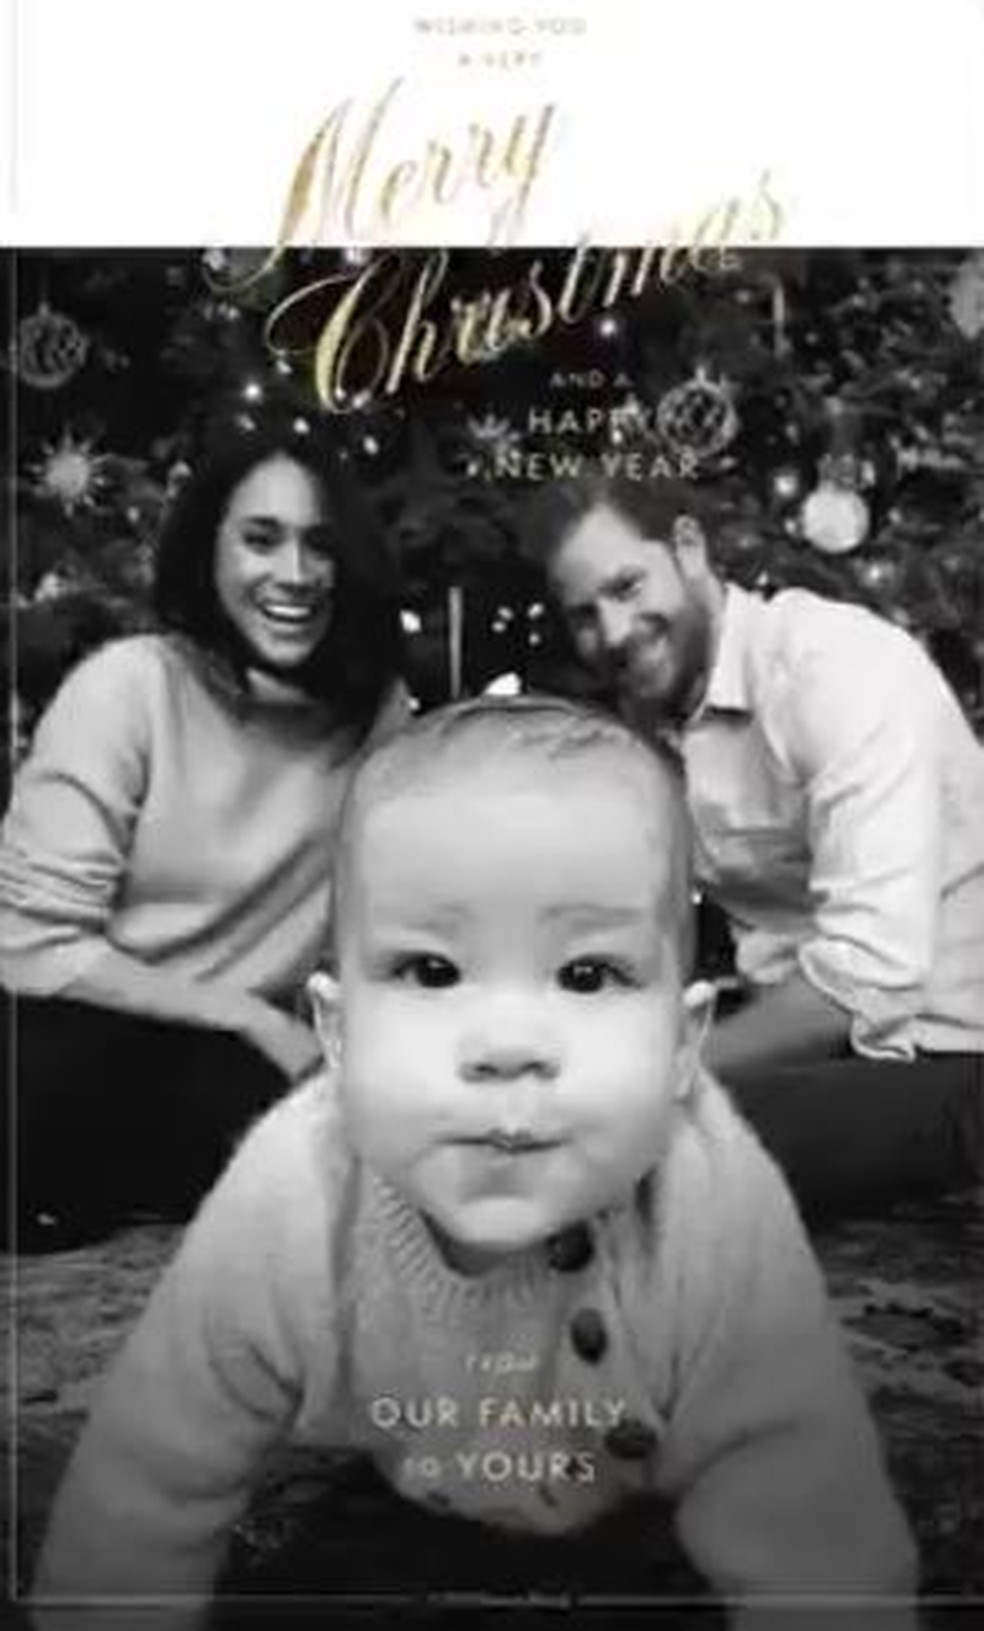 Príncipe Harry e Meghan Markle divulgam primeiro cartão de natal do bebê Archie — Foto: Reprodução/Twitter/The Queen's Commonwealth Trust